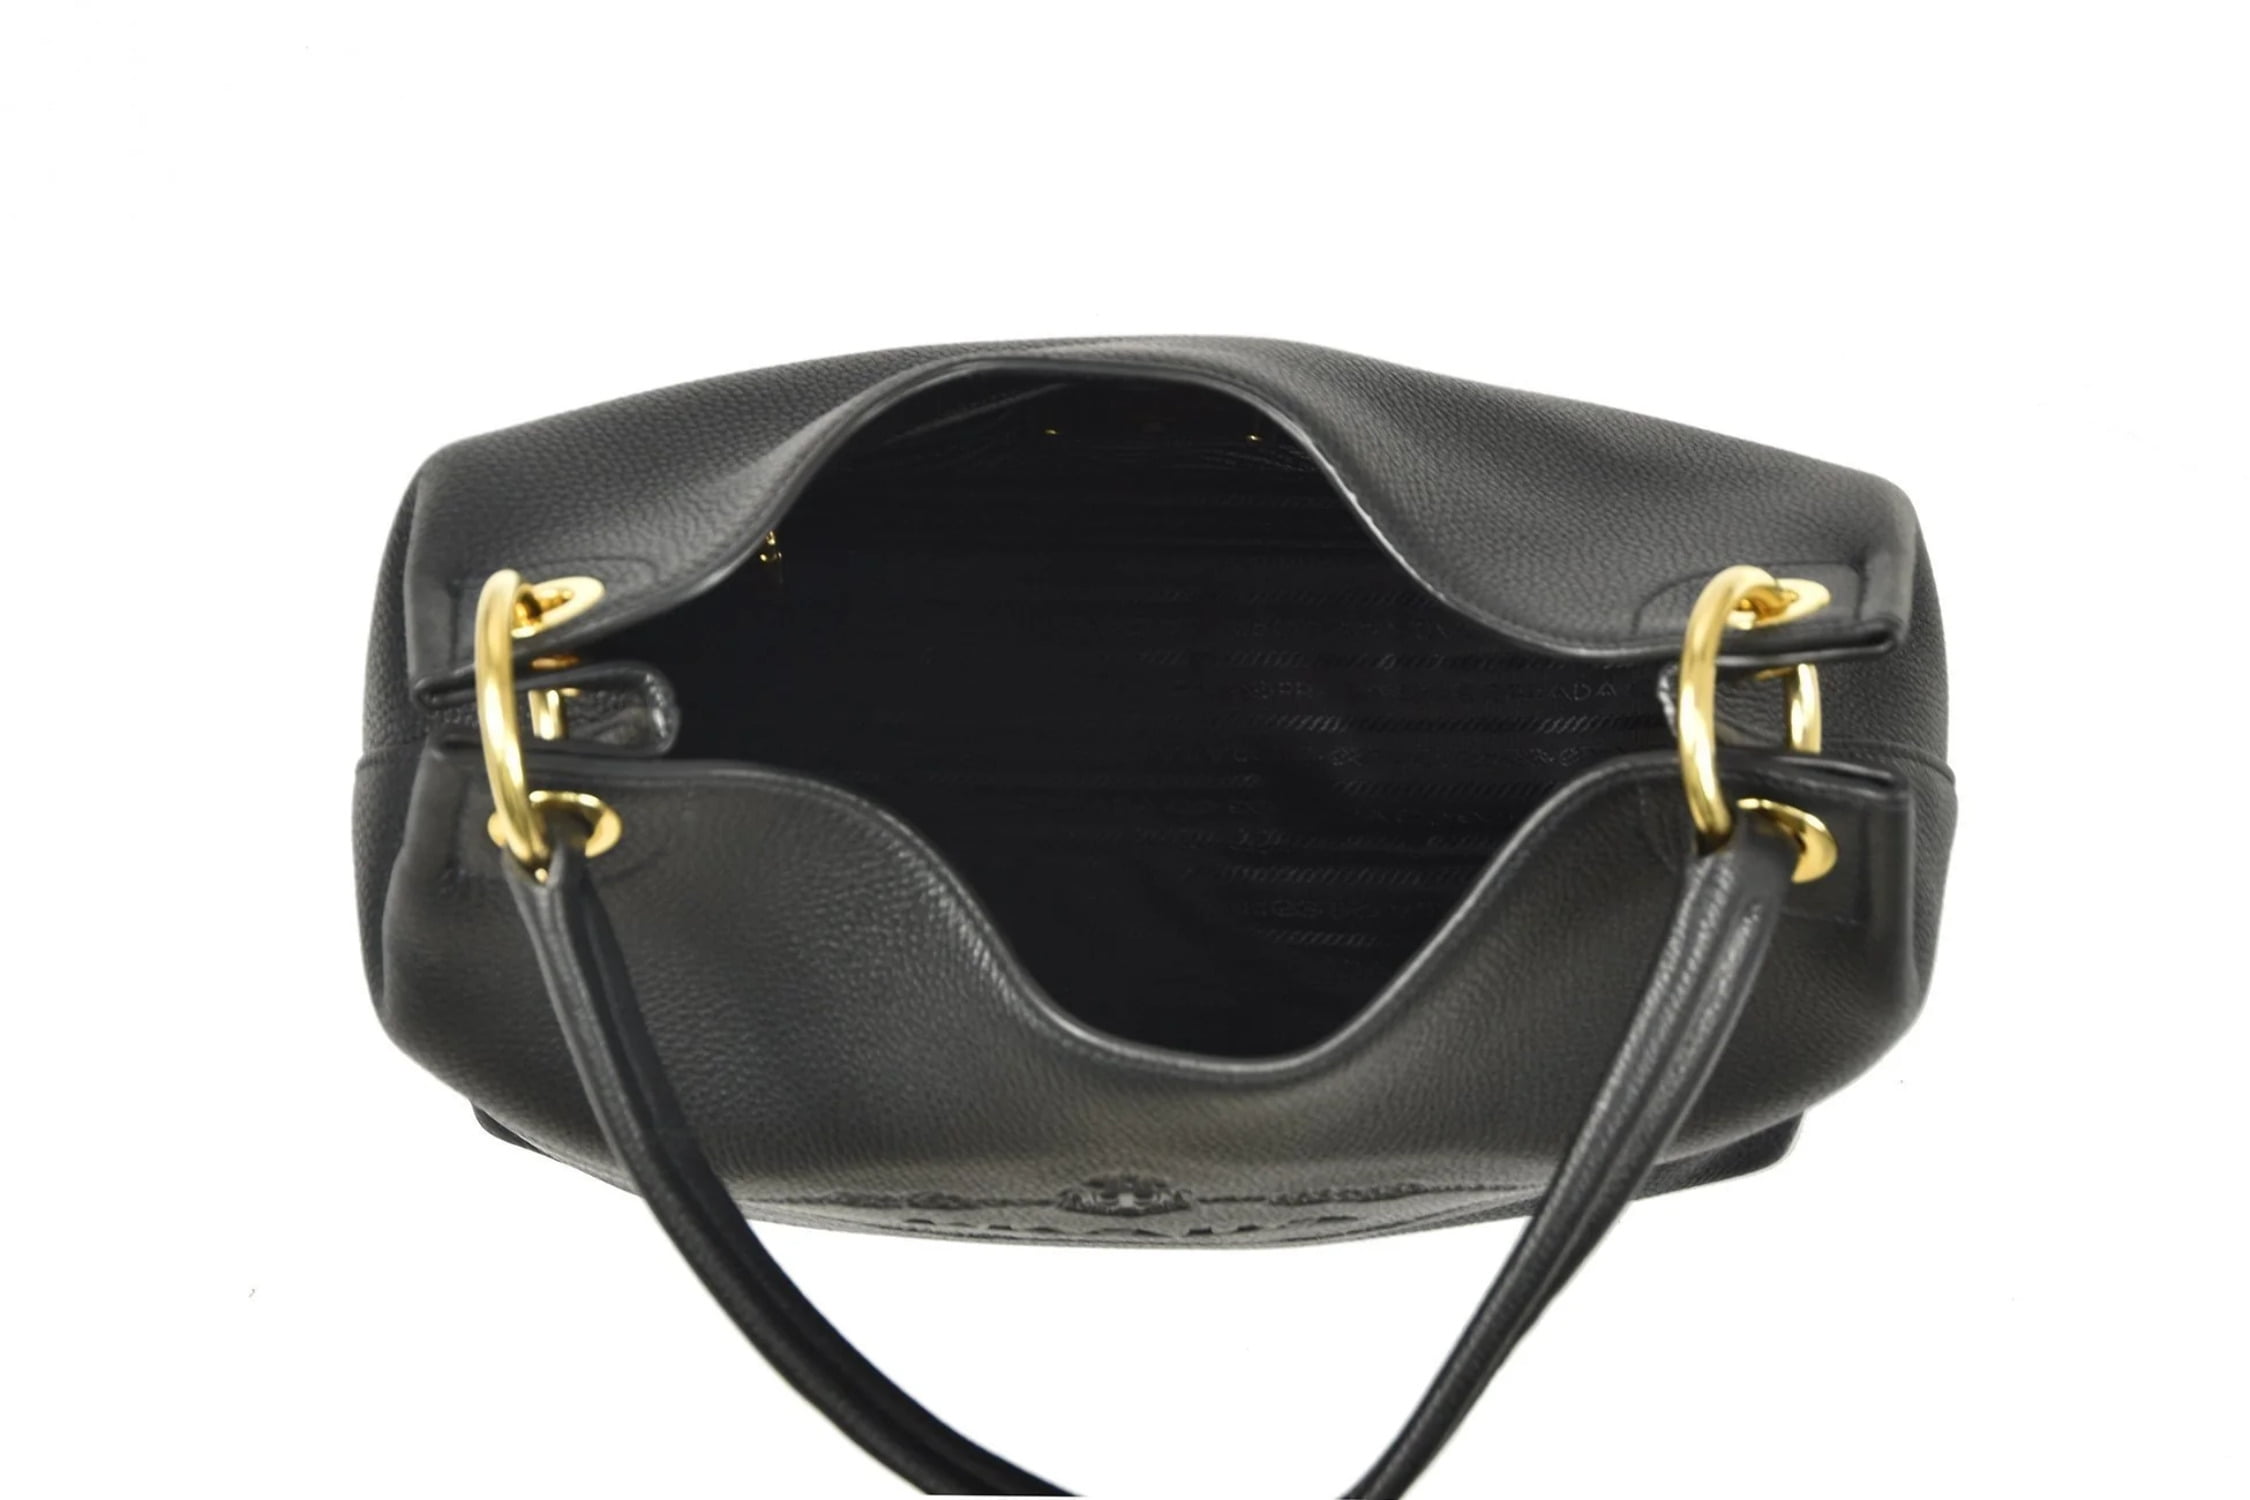 Prada Vitello Phenix Hobo - Black Hobos, Handbags - PRA891010